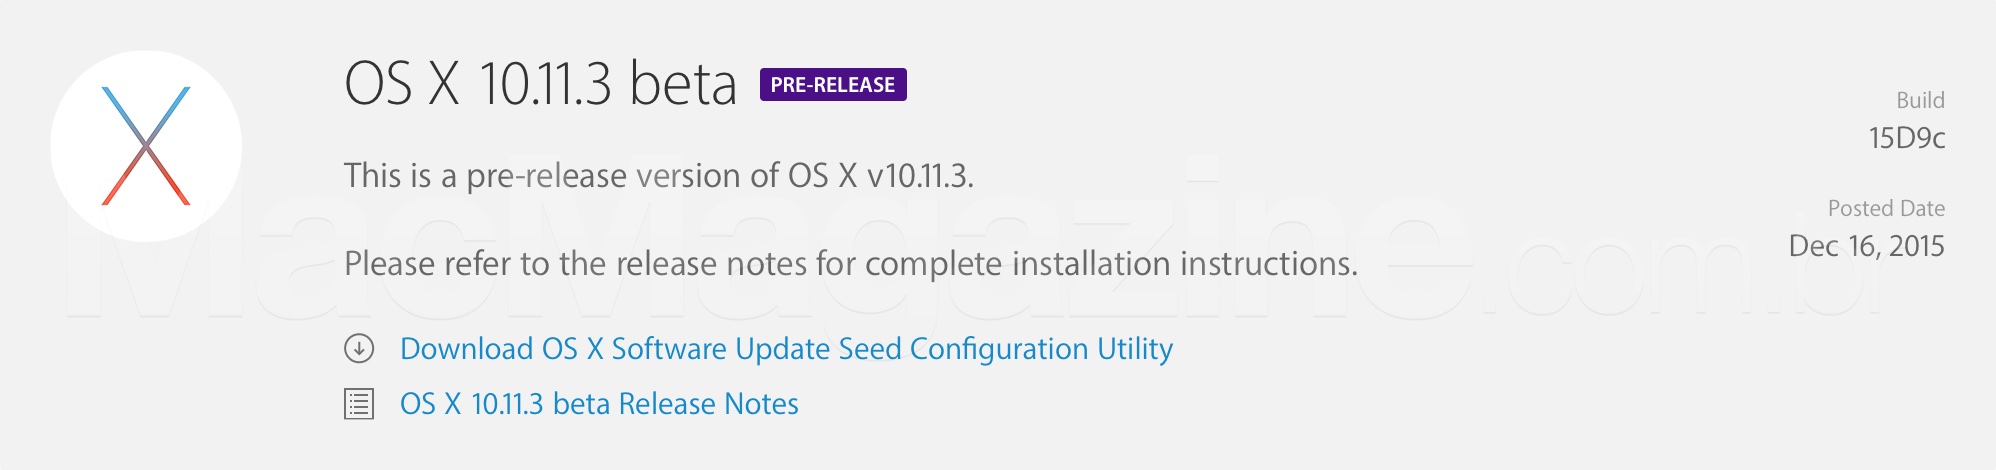 OS X 10.11.3 beta